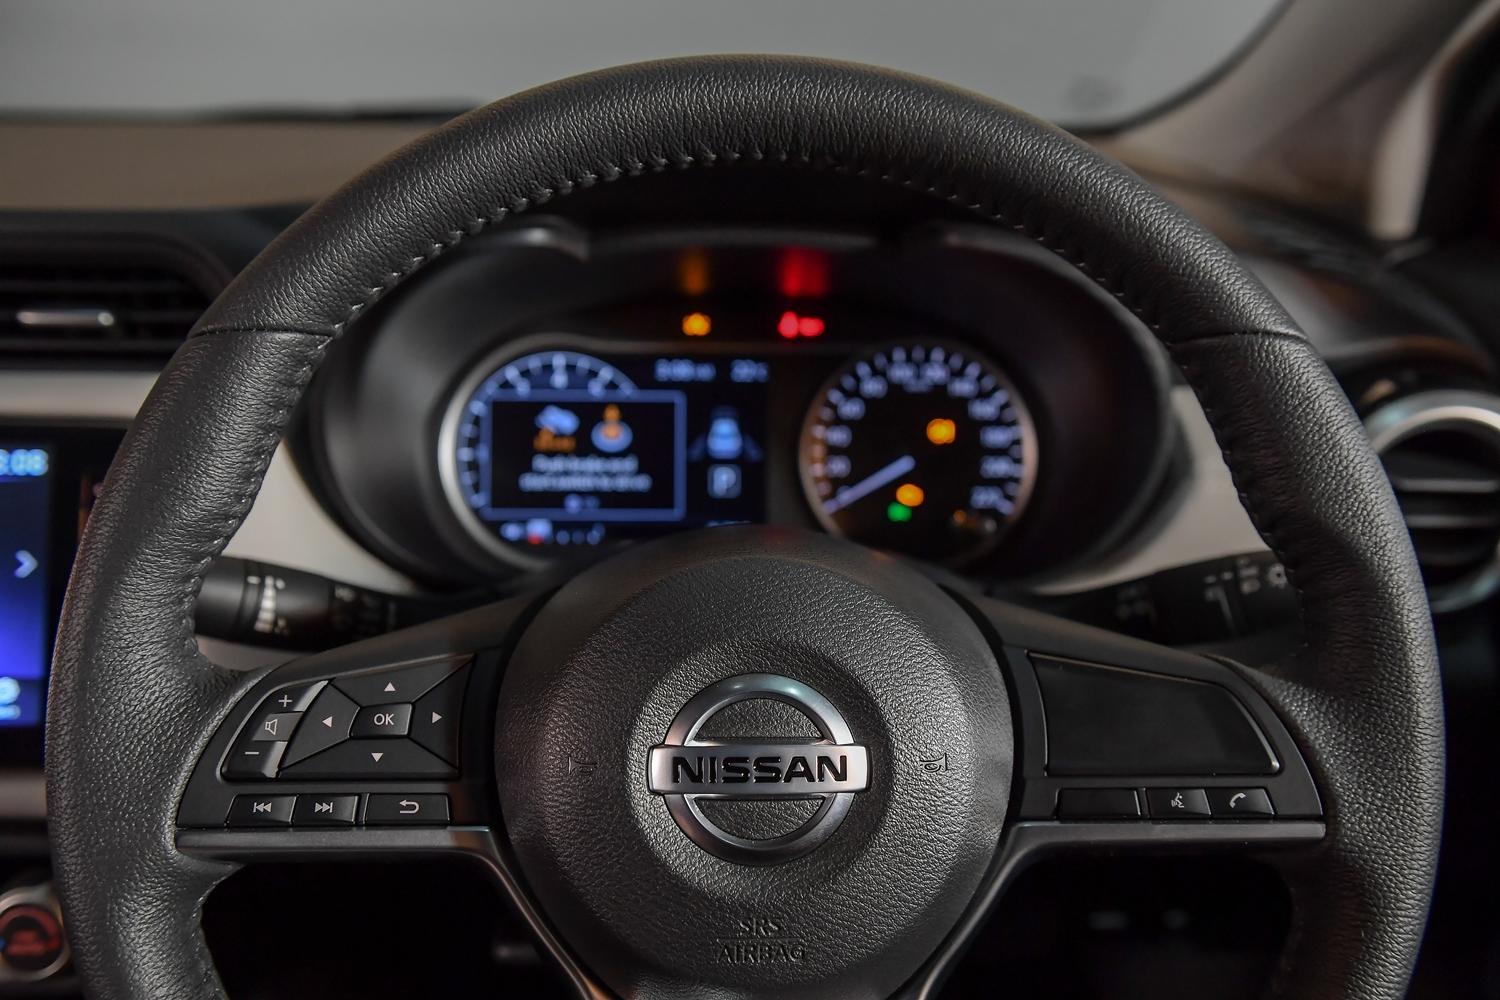 ส่องราคา All-new Nissan Almera 2020 ทุกรุ่นย่อยที่เริ่มต้นไม่ถึงห้าแสนบาท!